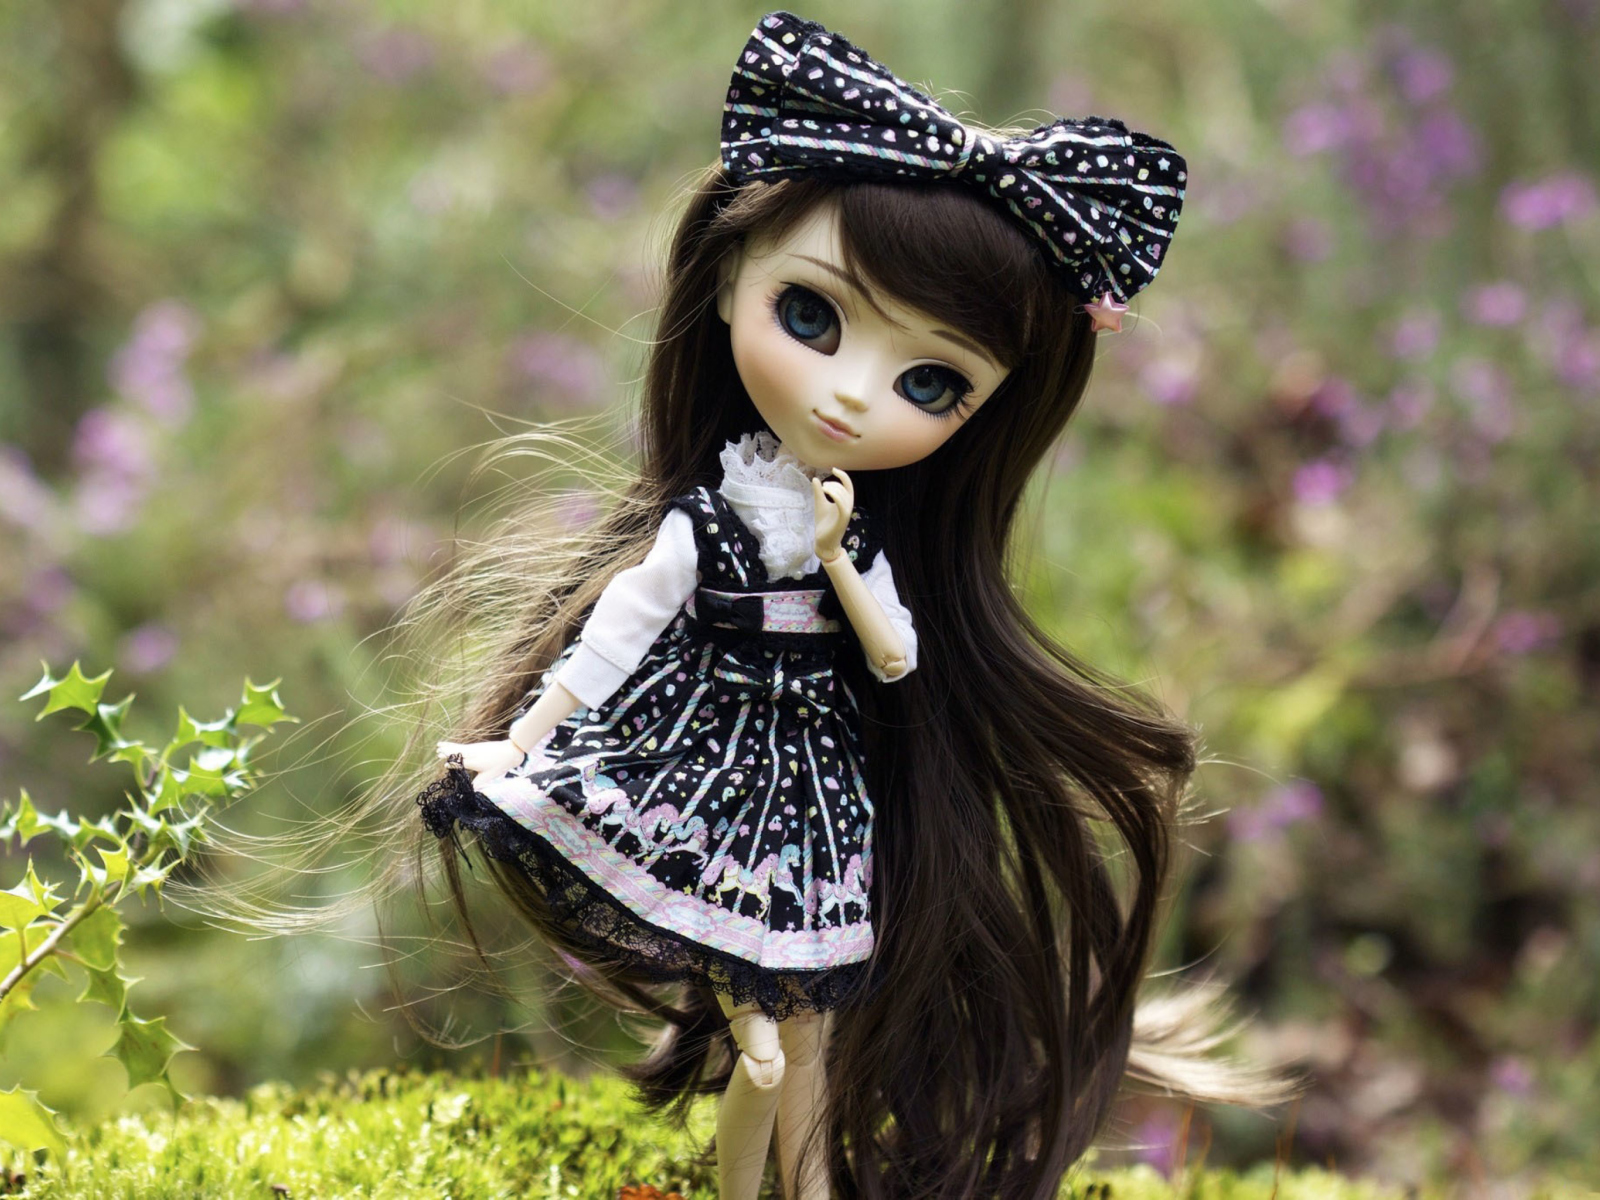 Обои Cute Doll With Dark Hair And Black Bow 1600x1200